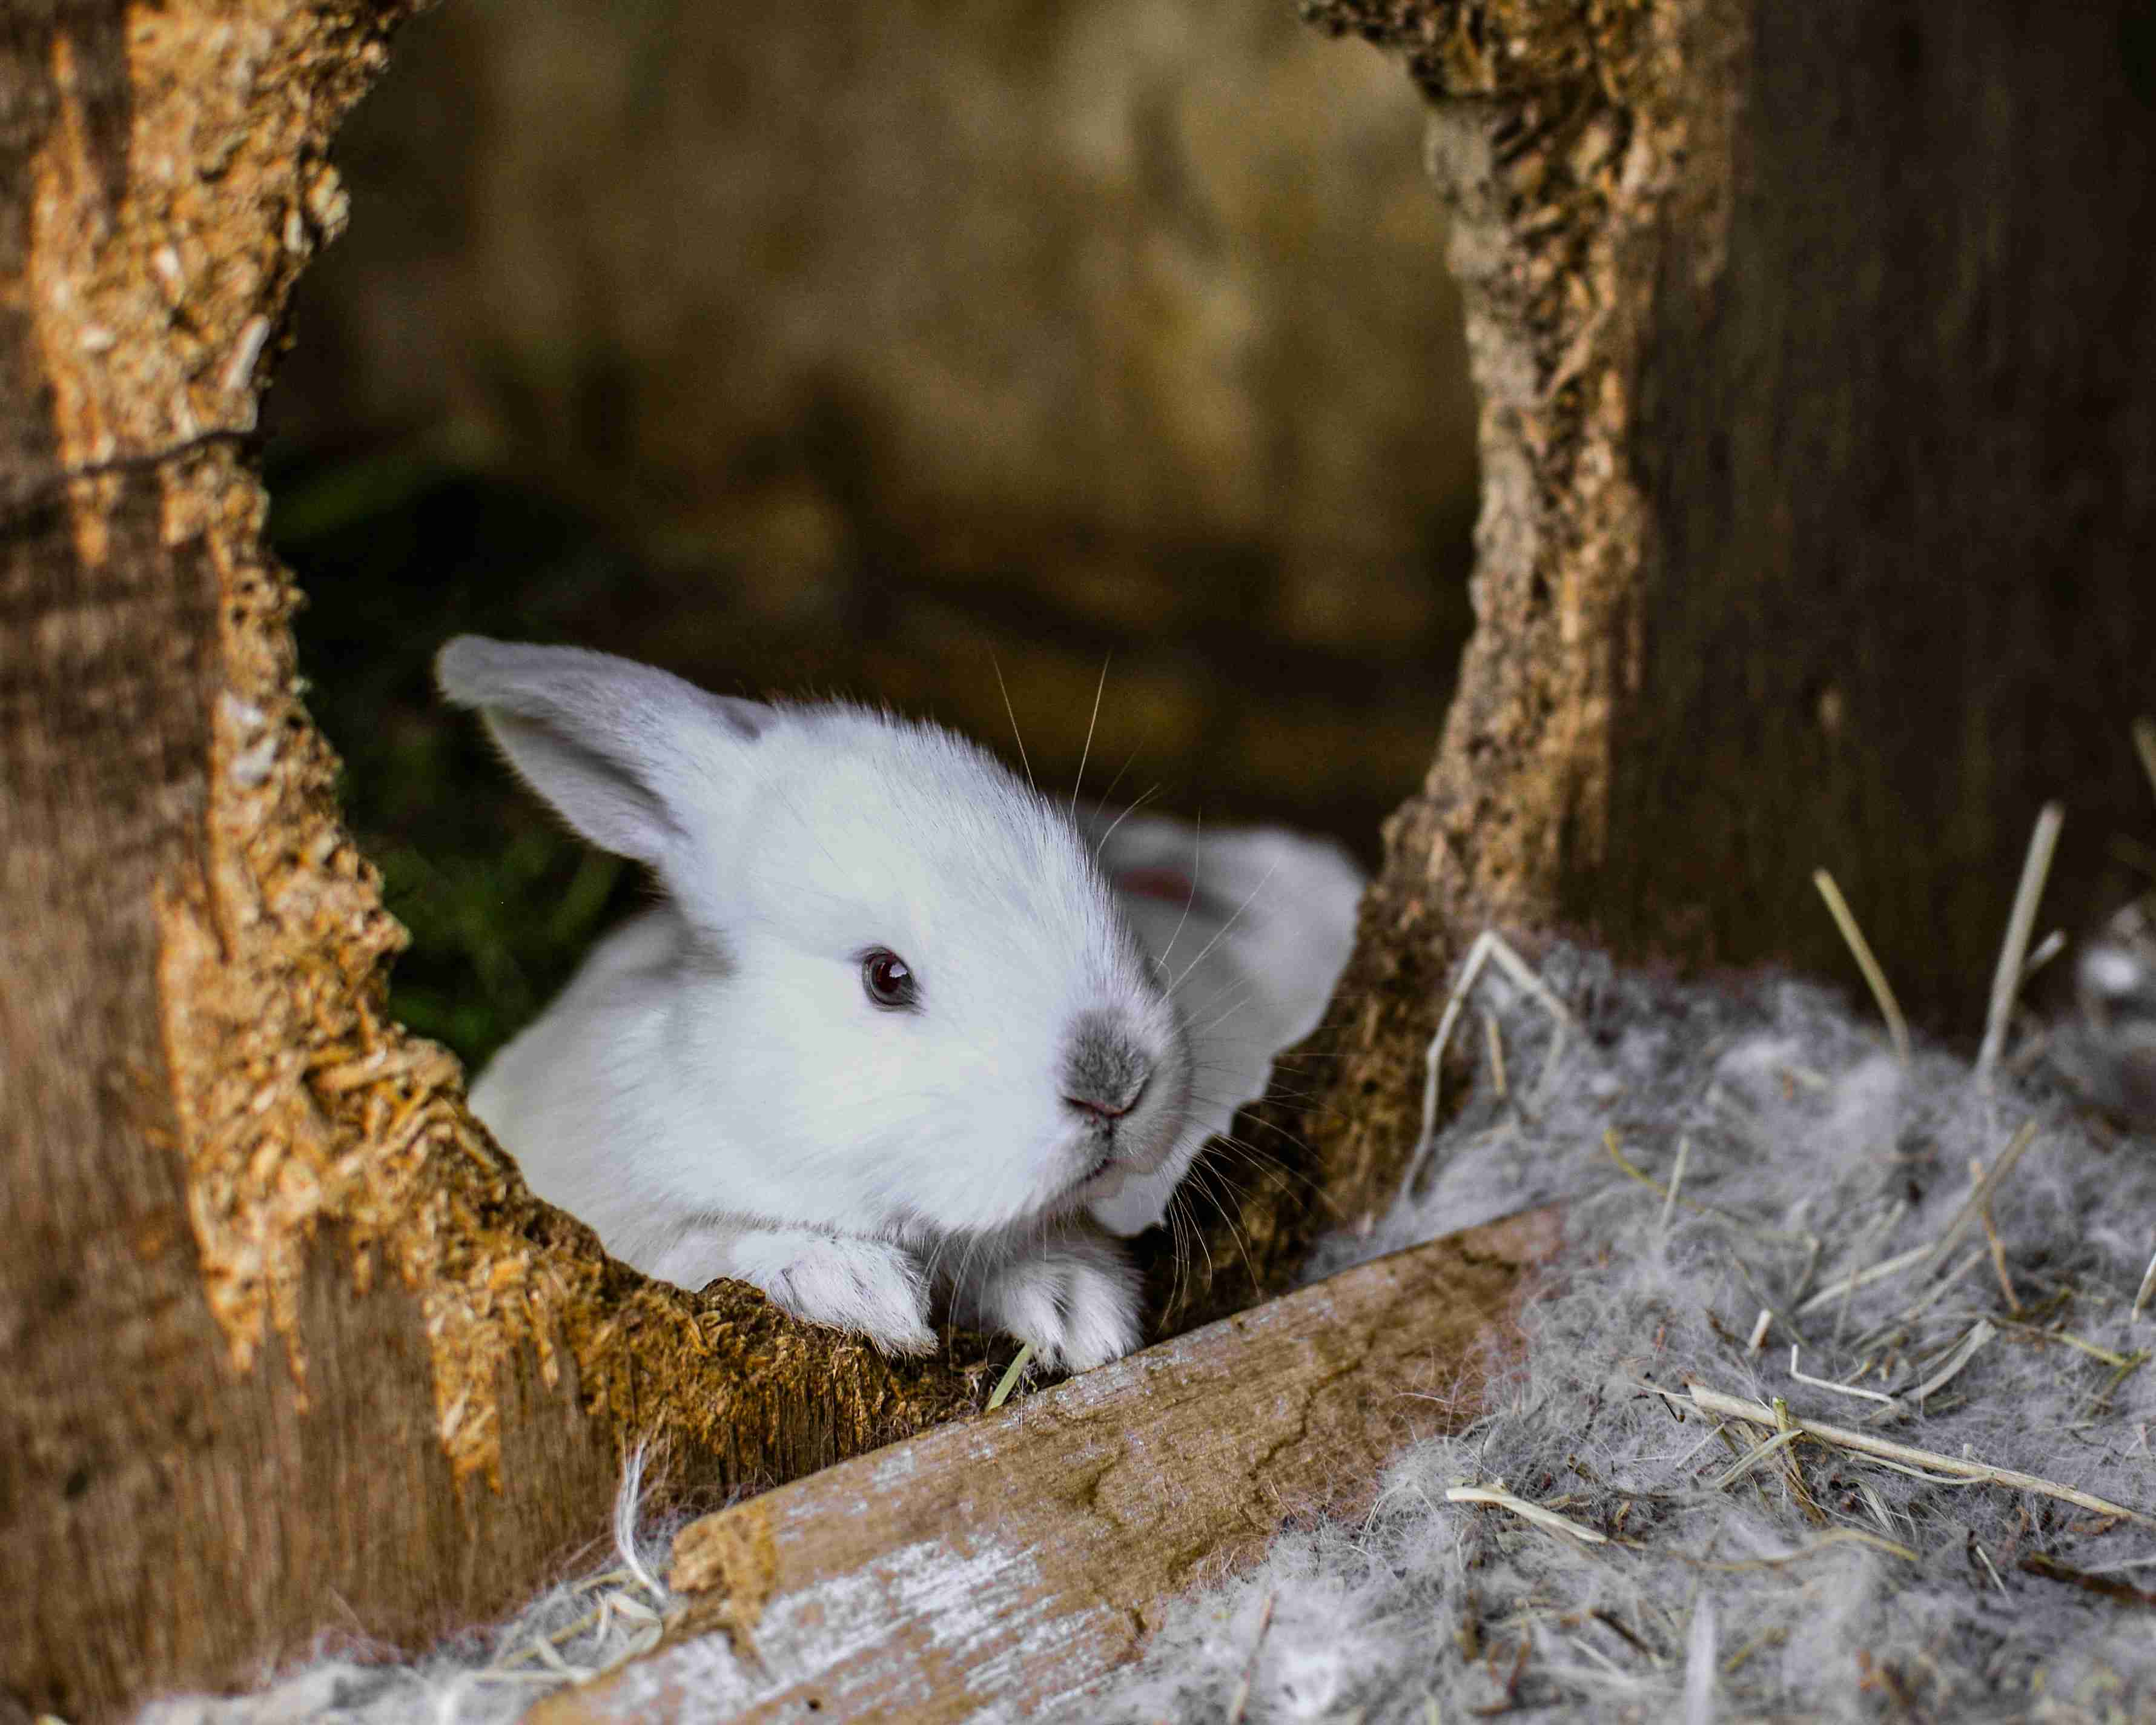 Understanding Your Rabbit: Exploring Common Behaviors of Pet Rabbits